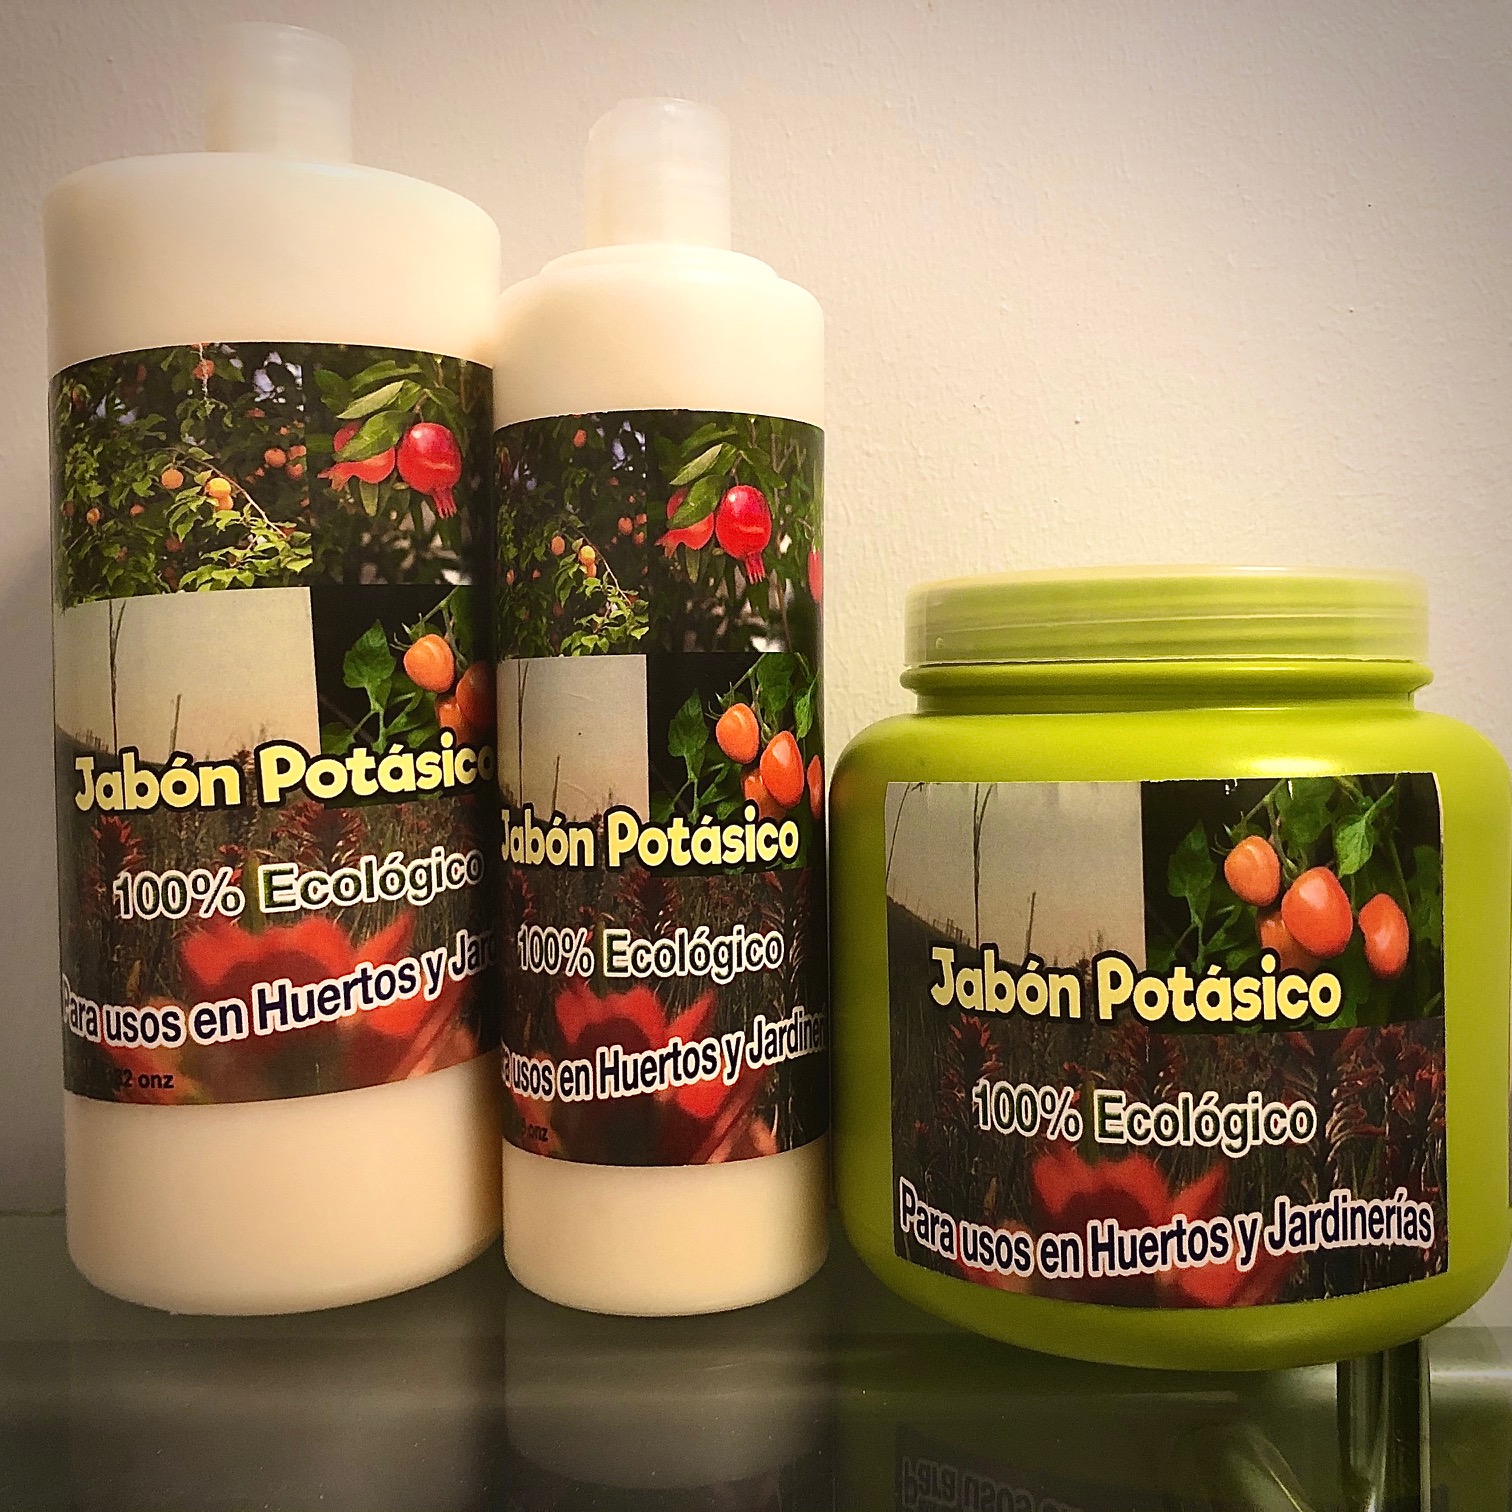 salud y belleza - Jabon Potasico Ecologico 0